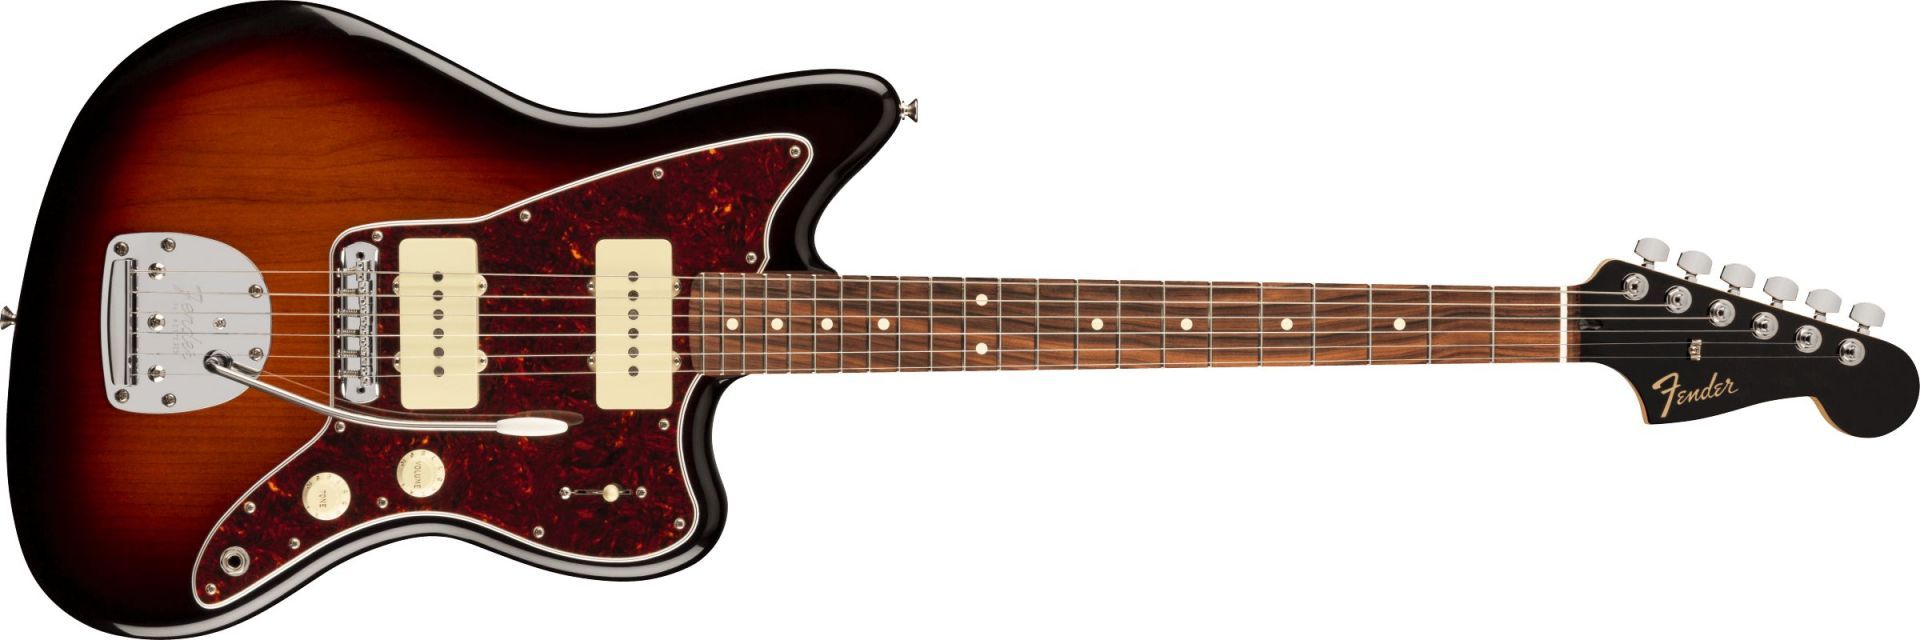 Fender Limited Edition Player Jazzmaster 3-Color Sunburst